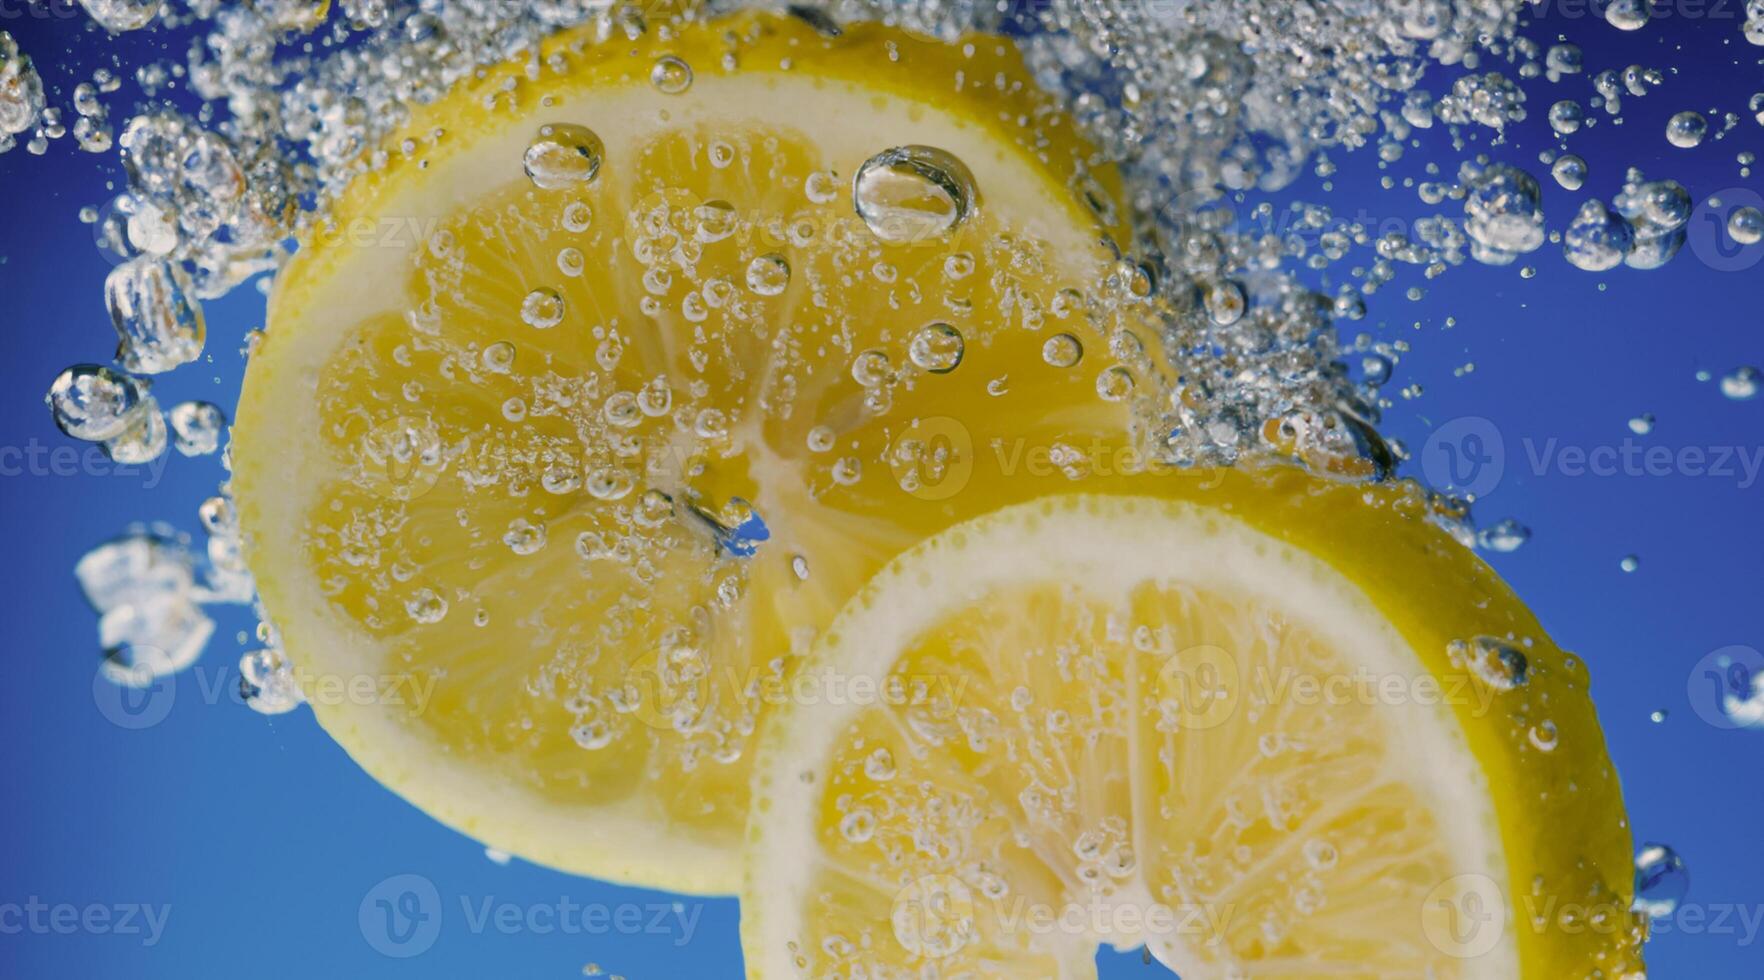 onderwater- citroen plak in Frisdrank water of limonade met bubbels. foto